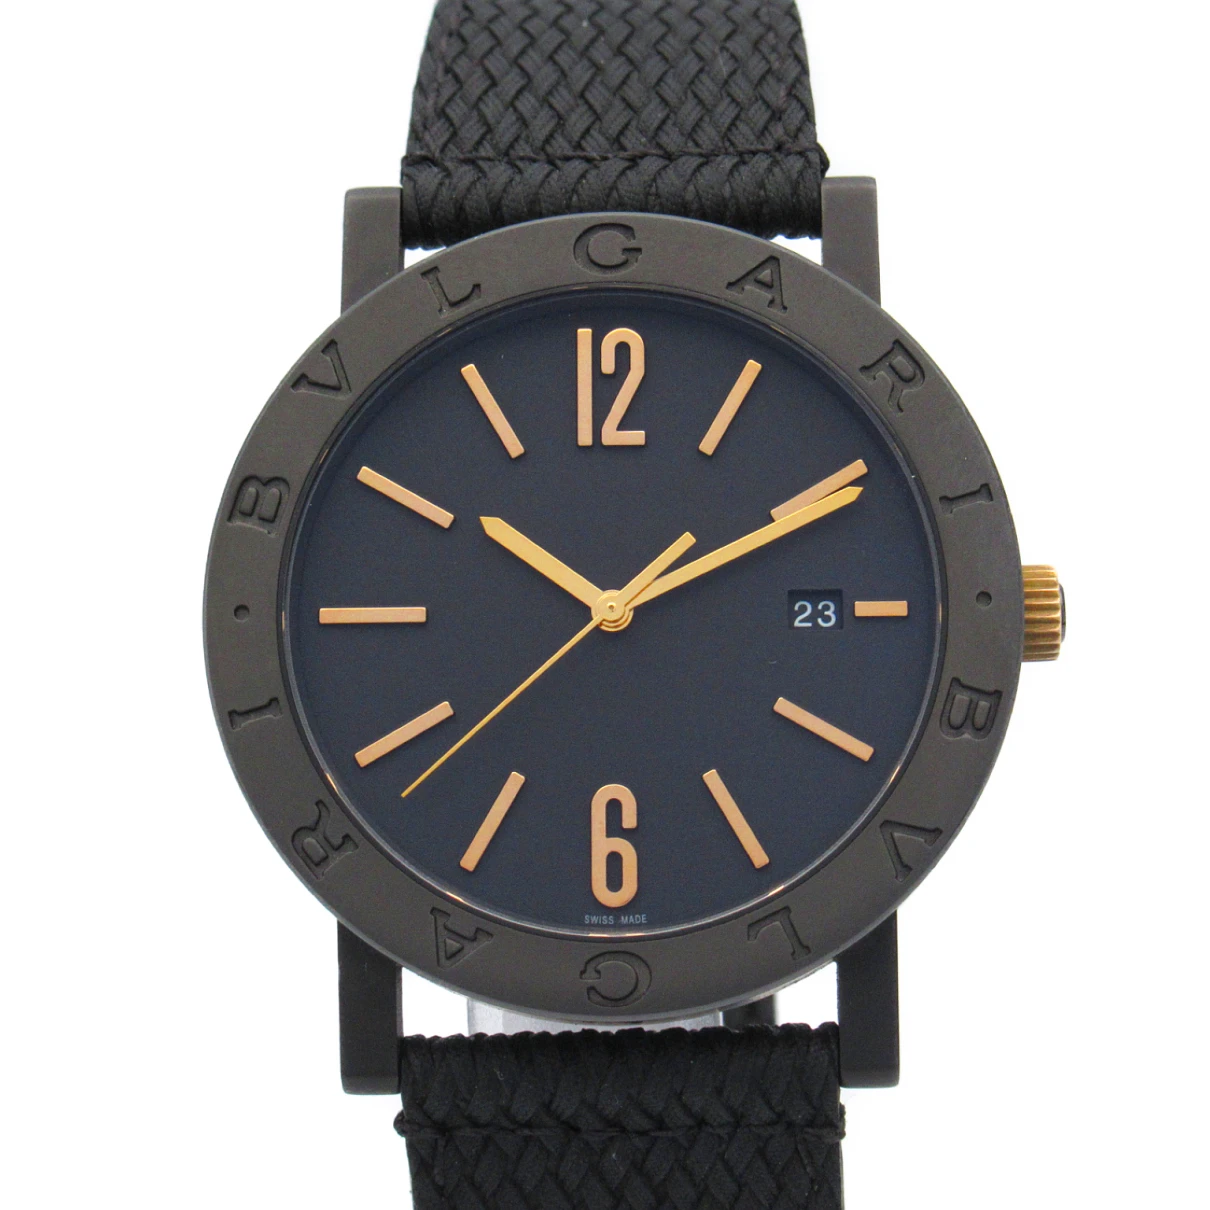 Pre-owned Bvlgari Watch In Black